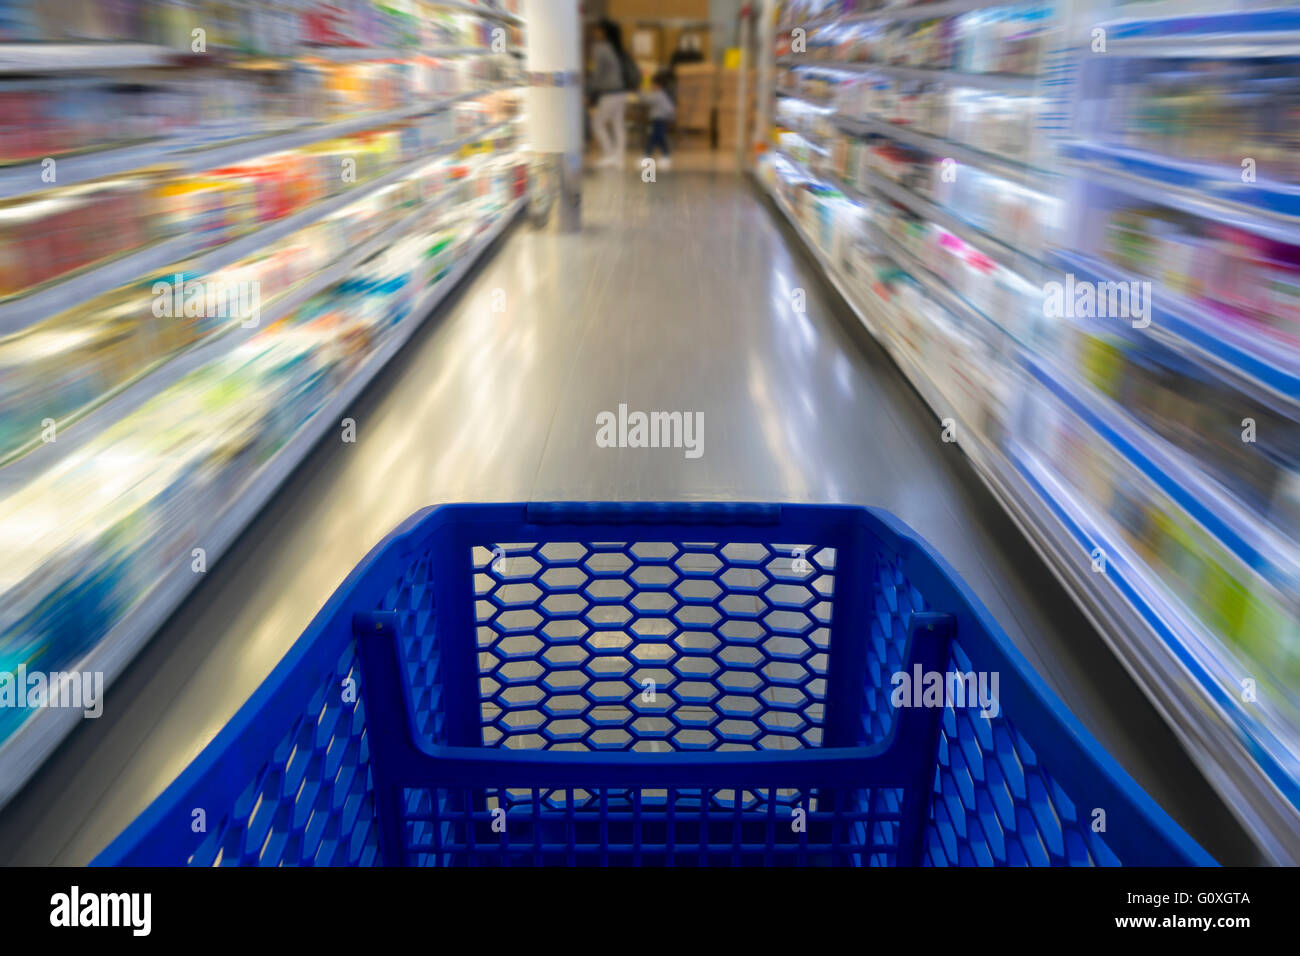 Einkaufswagen im Supermarkt mit unscharfen Regale im Hintergrund Stockfoto